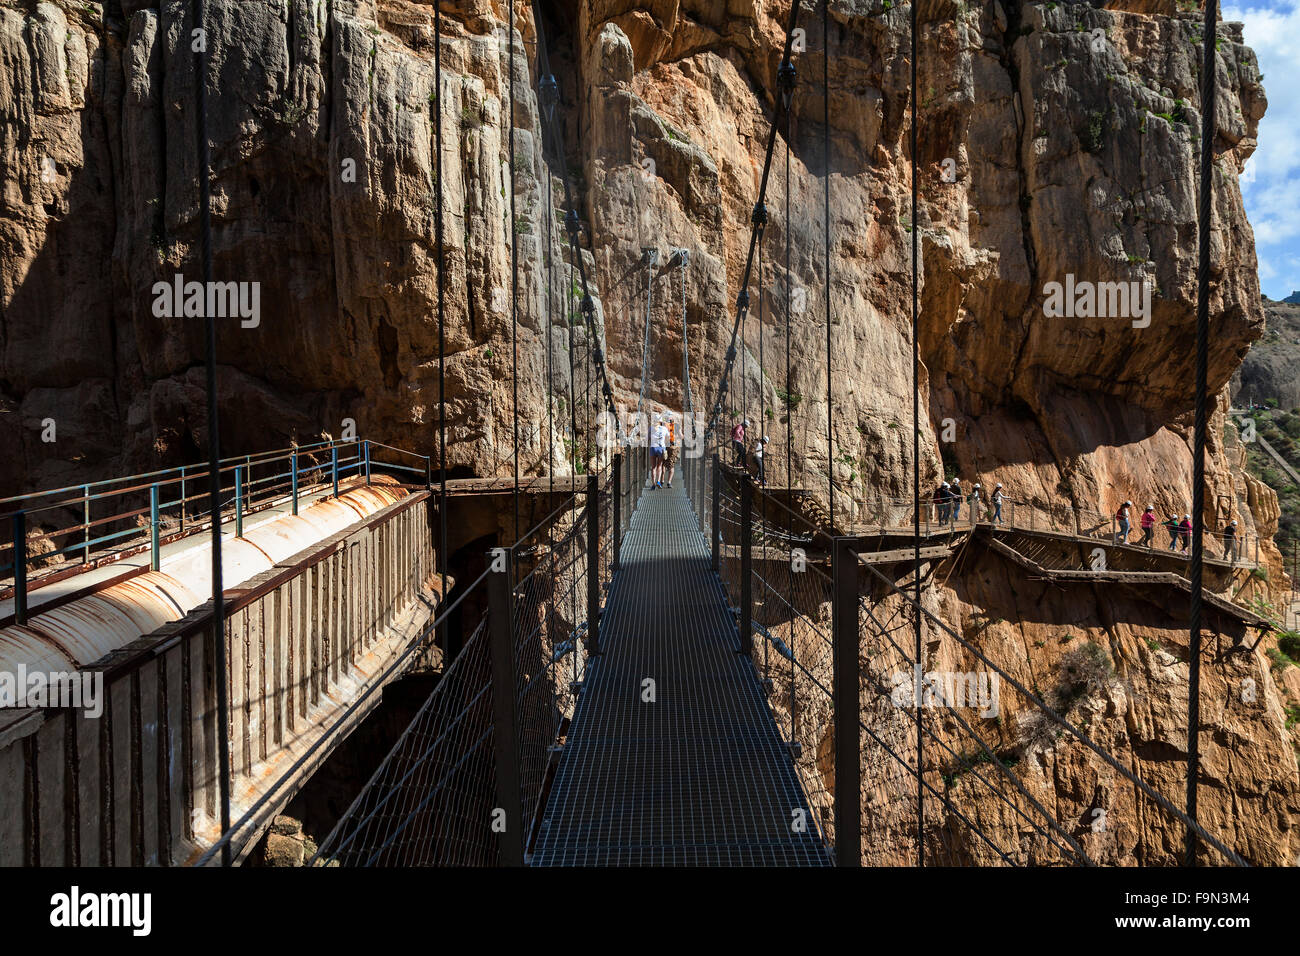 El Caminito del Rey sur pont piétons épinglées sur les murs escarpés d'une gorge étroite à El Chorro, près de Malaga, Andalousie, Espagne Banque D'Images